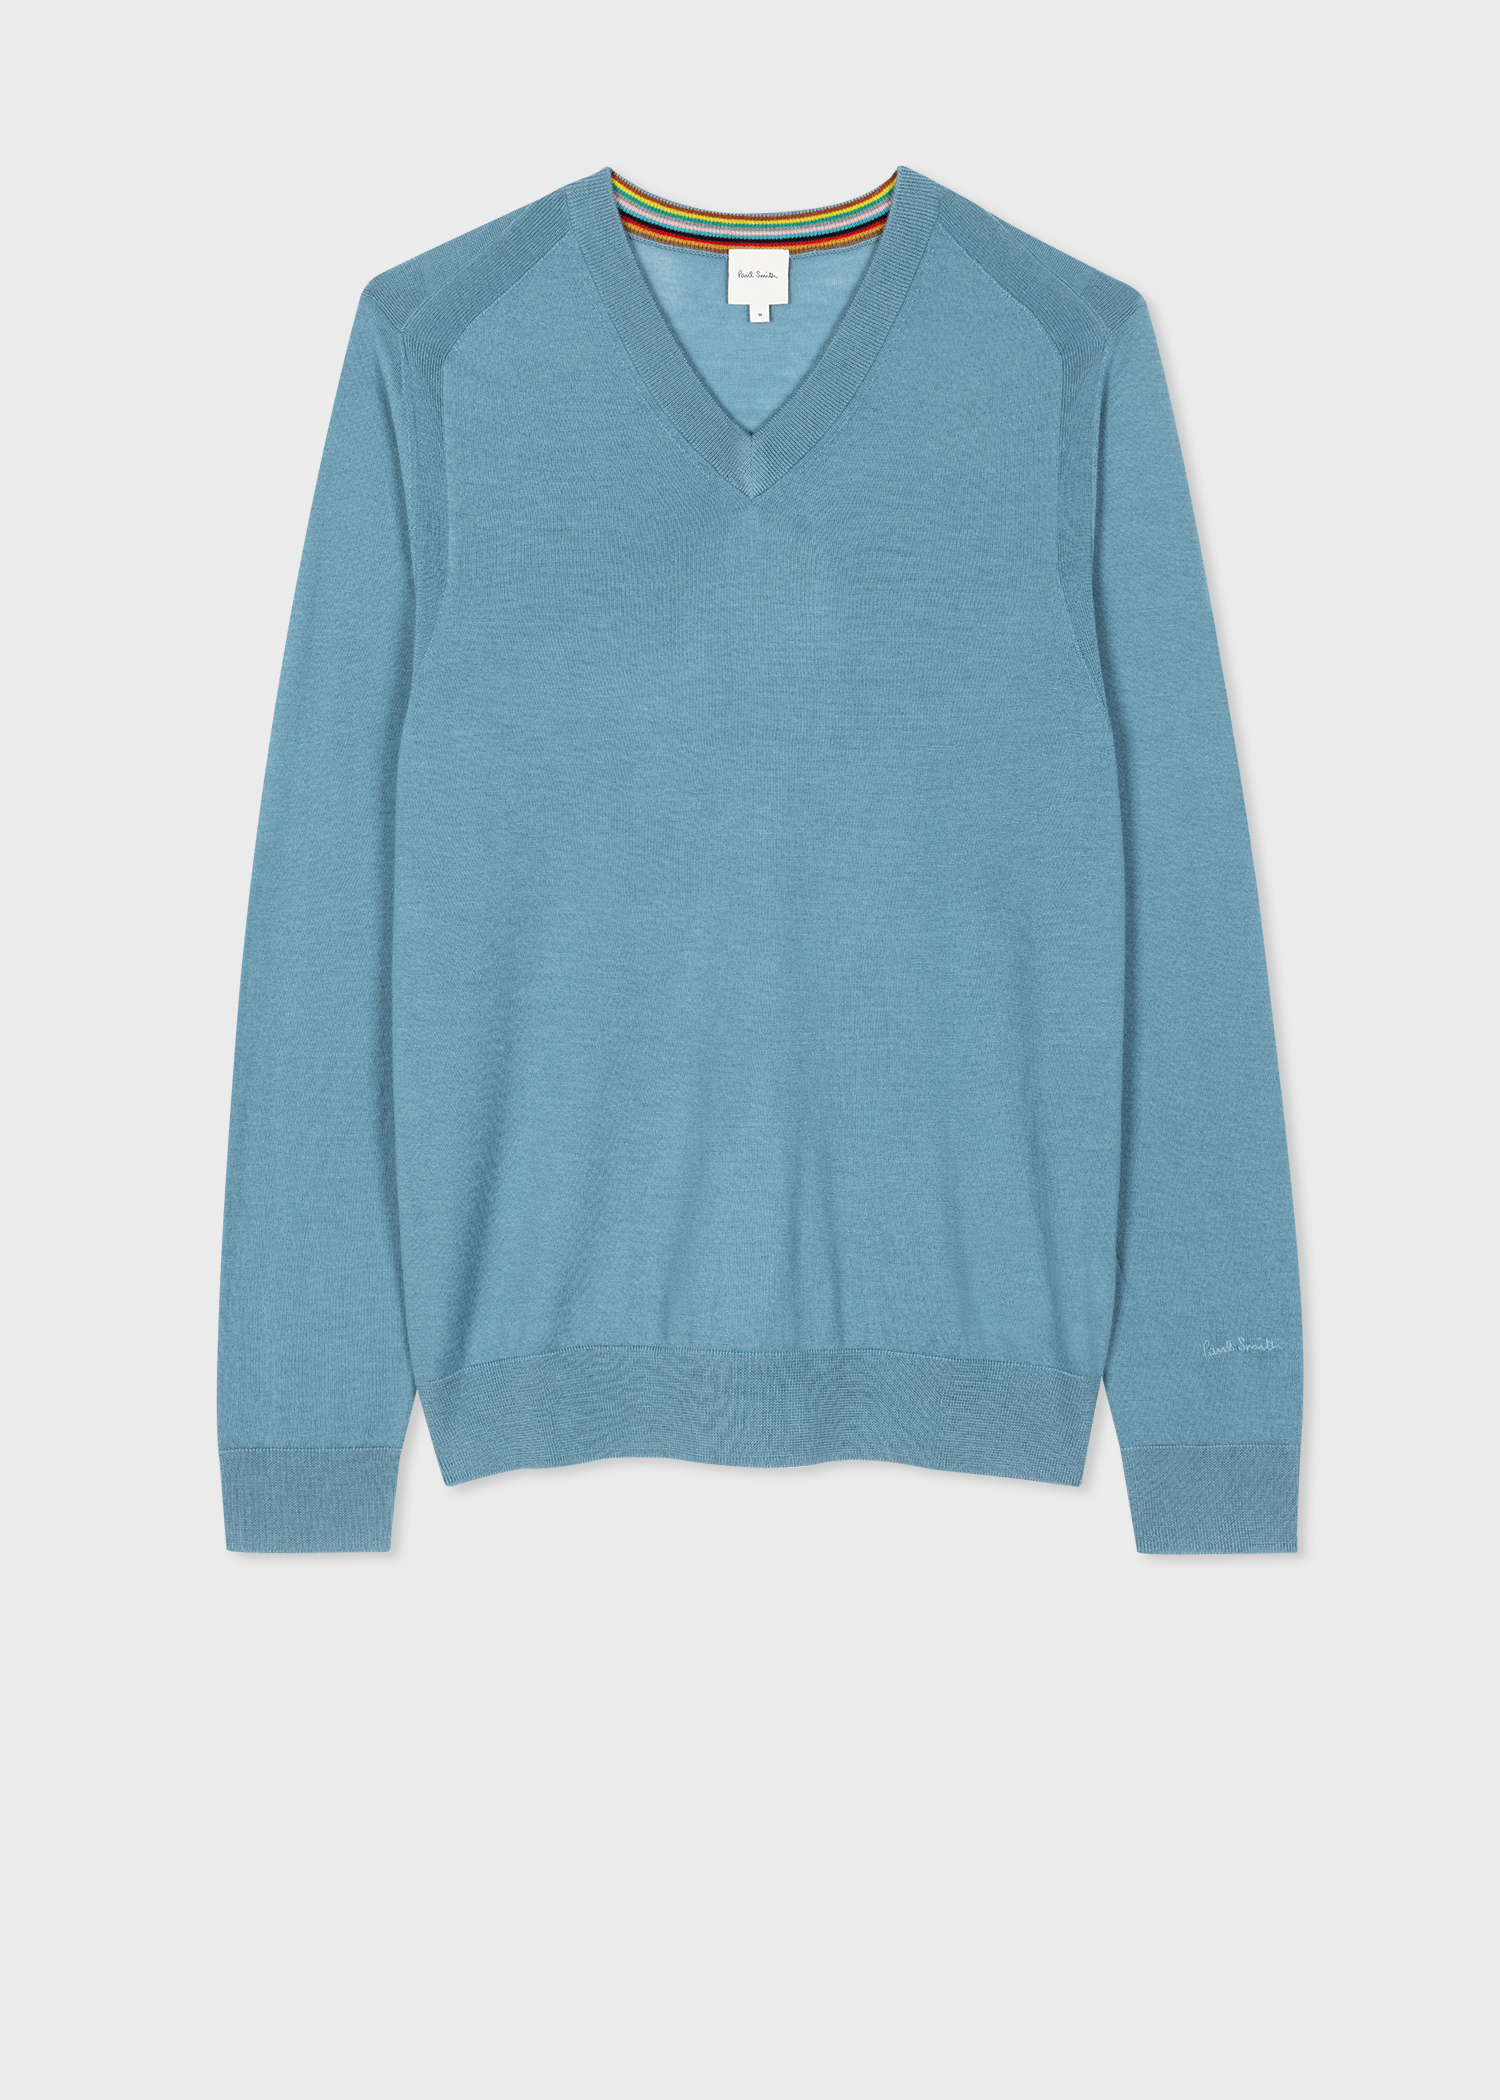 Men's Light Blue Merino Wool V-Neck Sweater